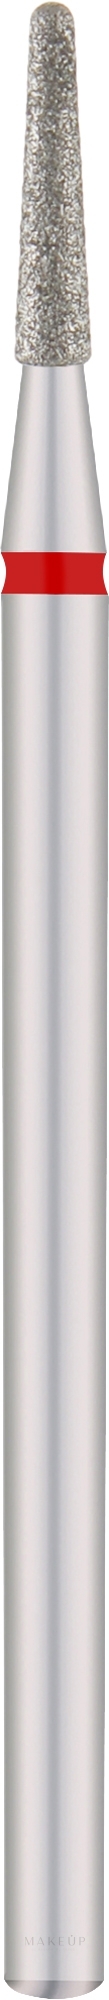 Diamantfräser Kegelstumpf rot Durchmesser 1,8 mm Arbeitsteil 8 mm - Staleks Pro — Bild 1 St.